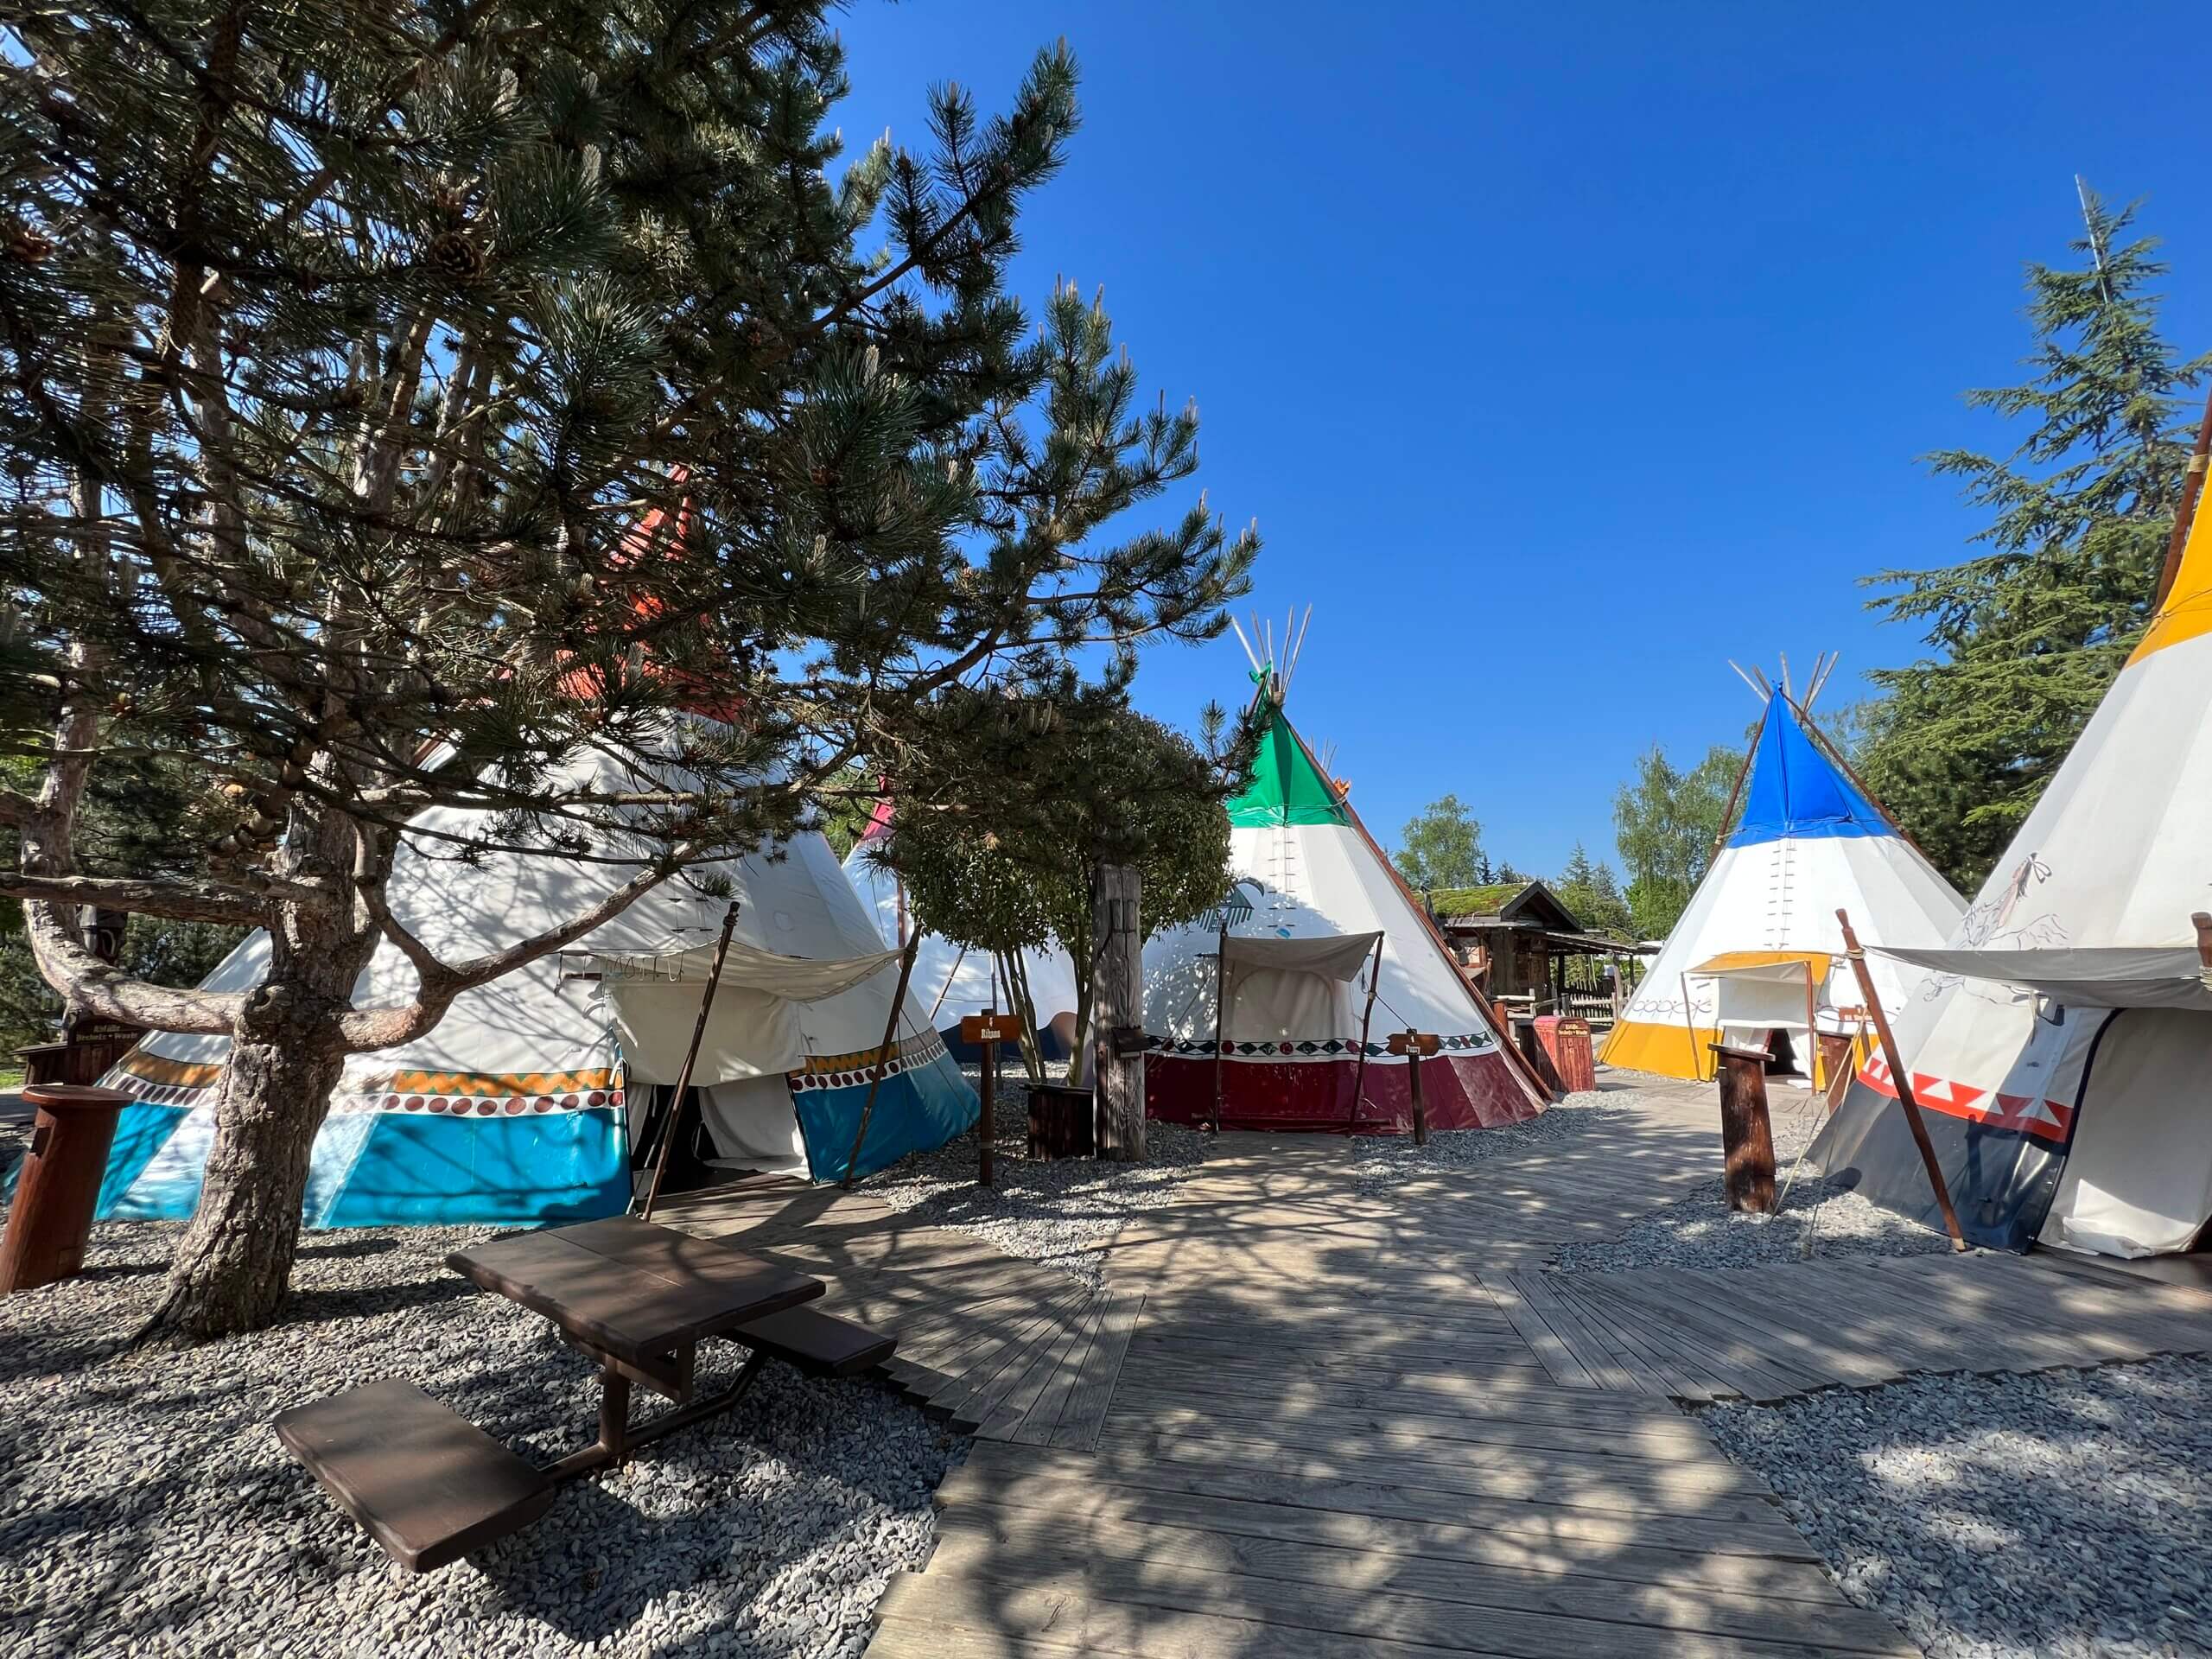 Het Camp Resort Europa-Park heeft verschillende verhuuraccommodaties, zoals deze Tipi tenten.